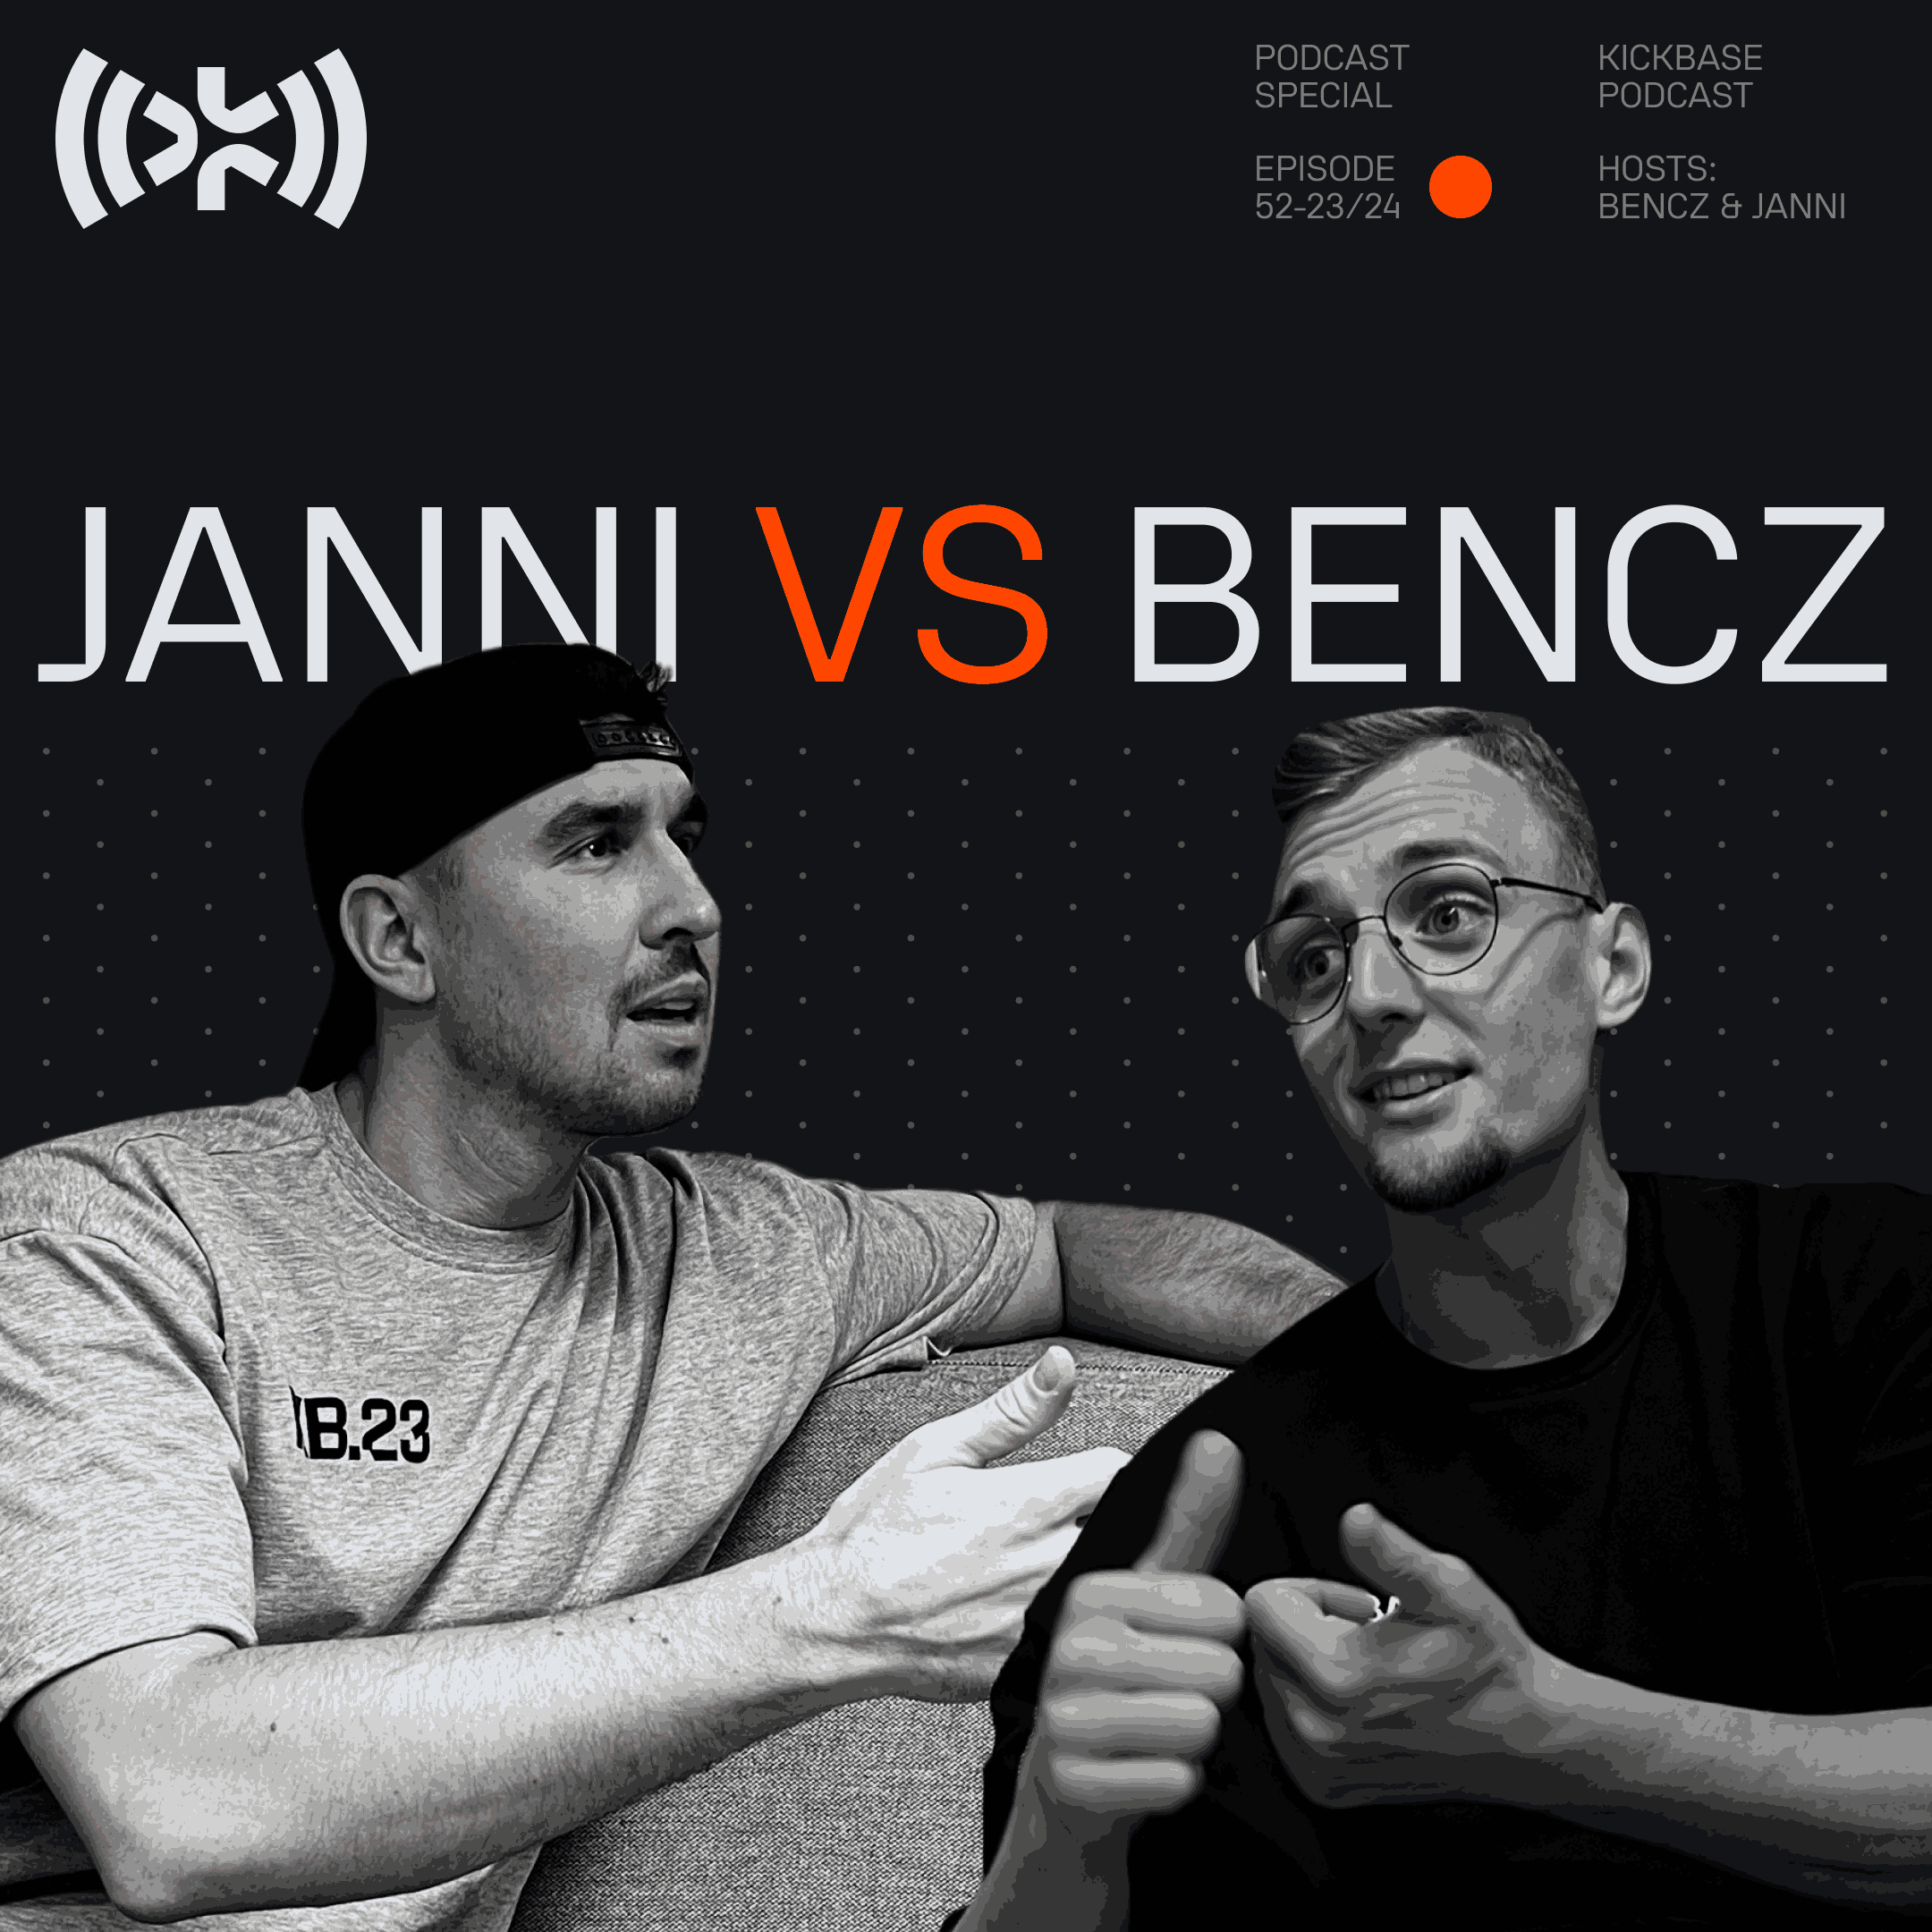 Janni vs Bencz